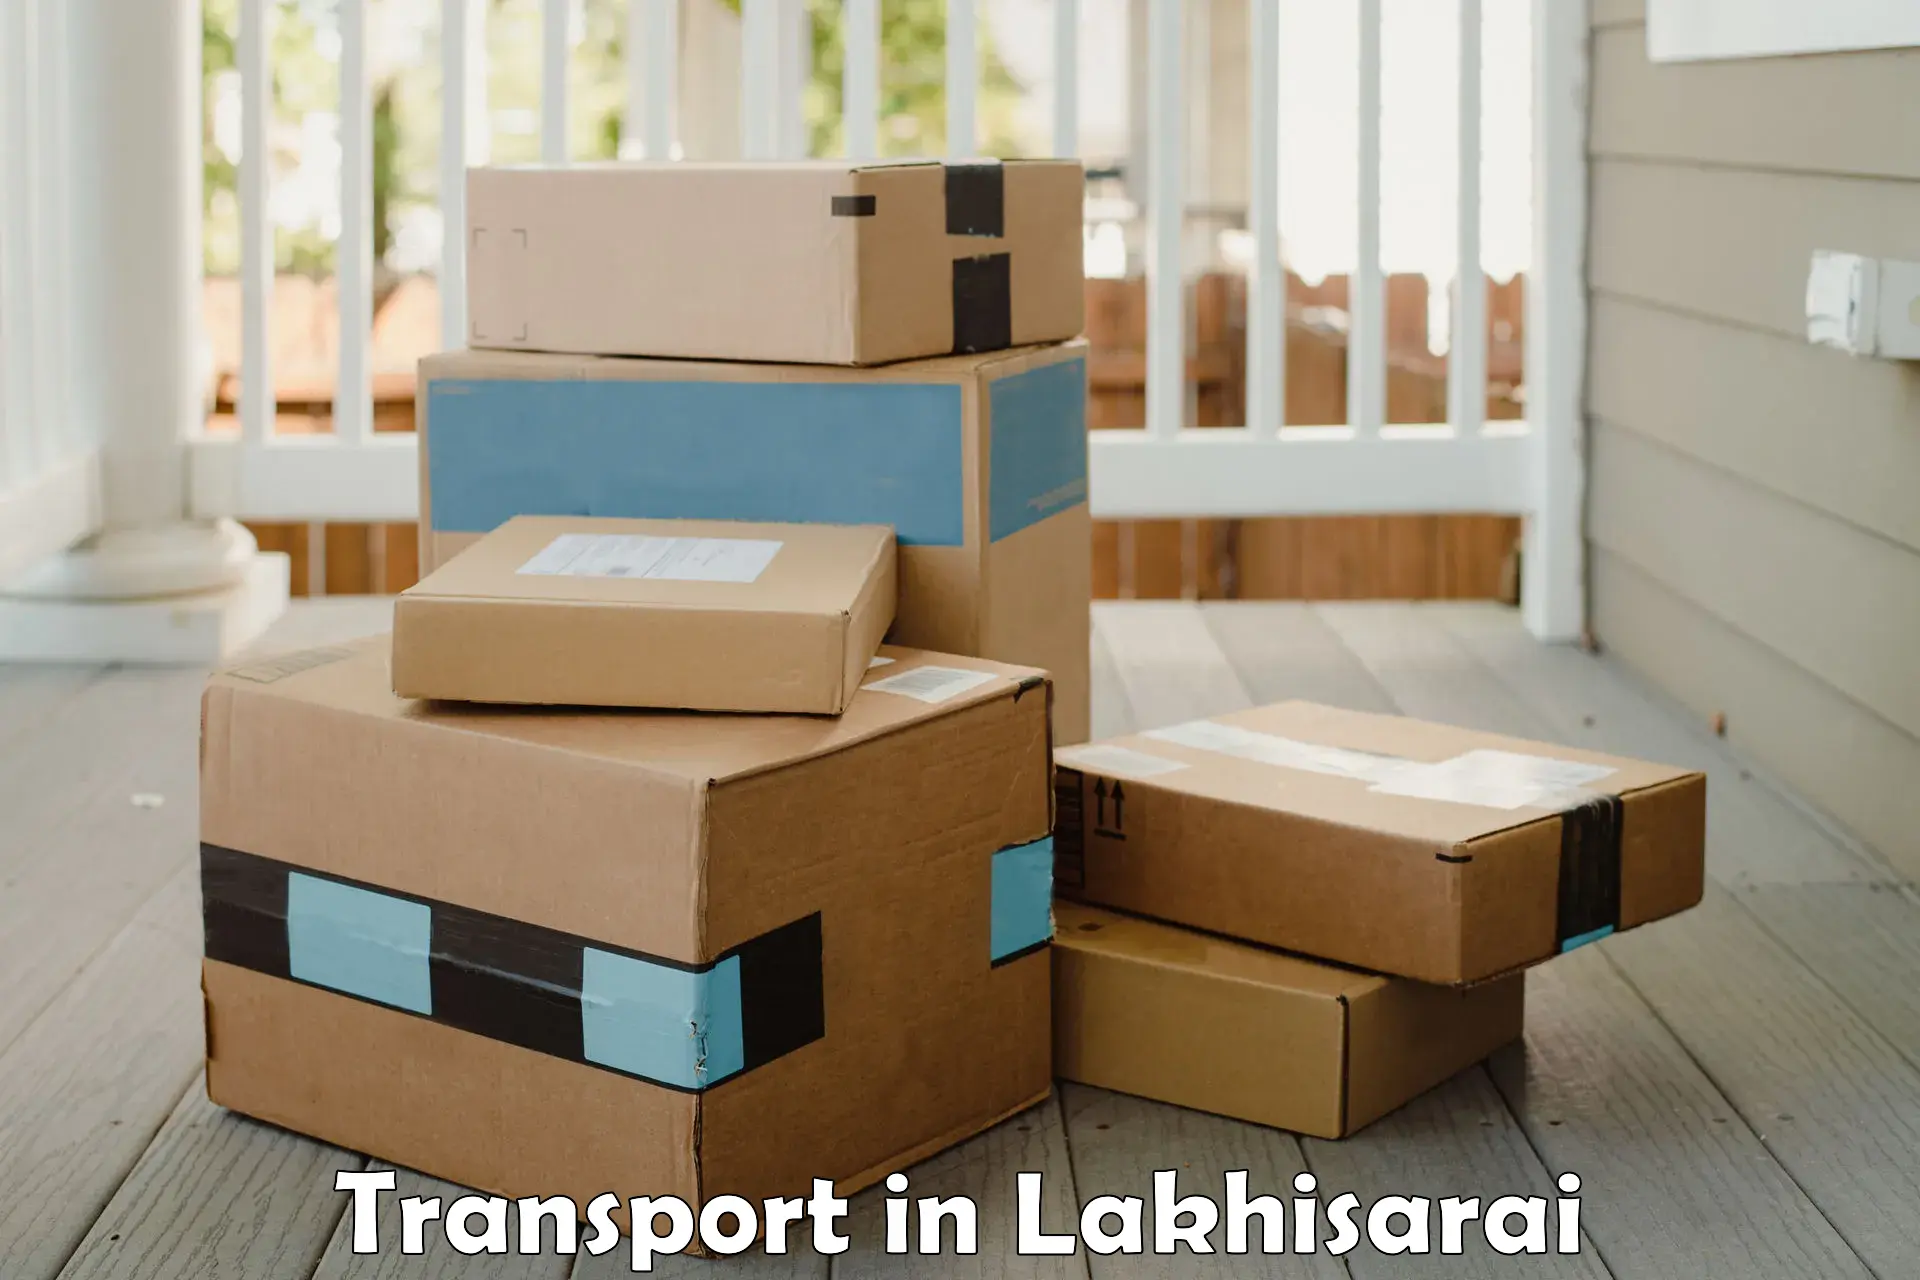 Furniture transport service in Lakhisarai